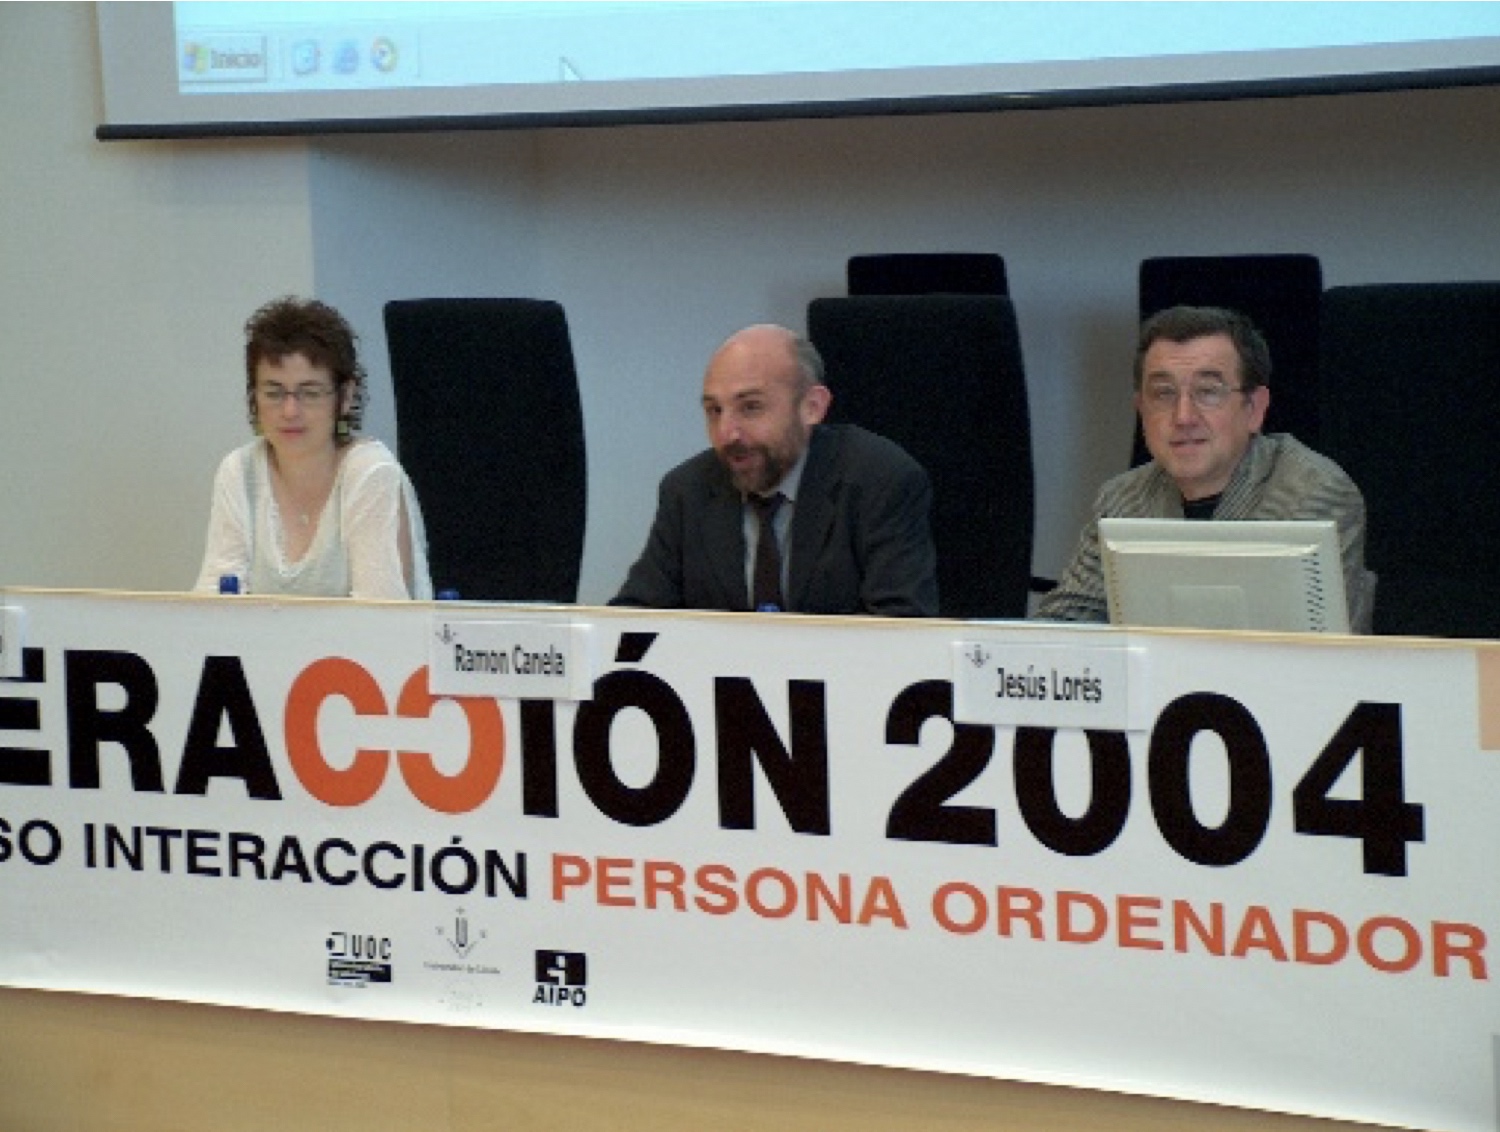 Mesa de autoridades de la sesión de clausura del congreso Interacción2004. Raquel navarro, Ramón Canela y Jesús Lorés